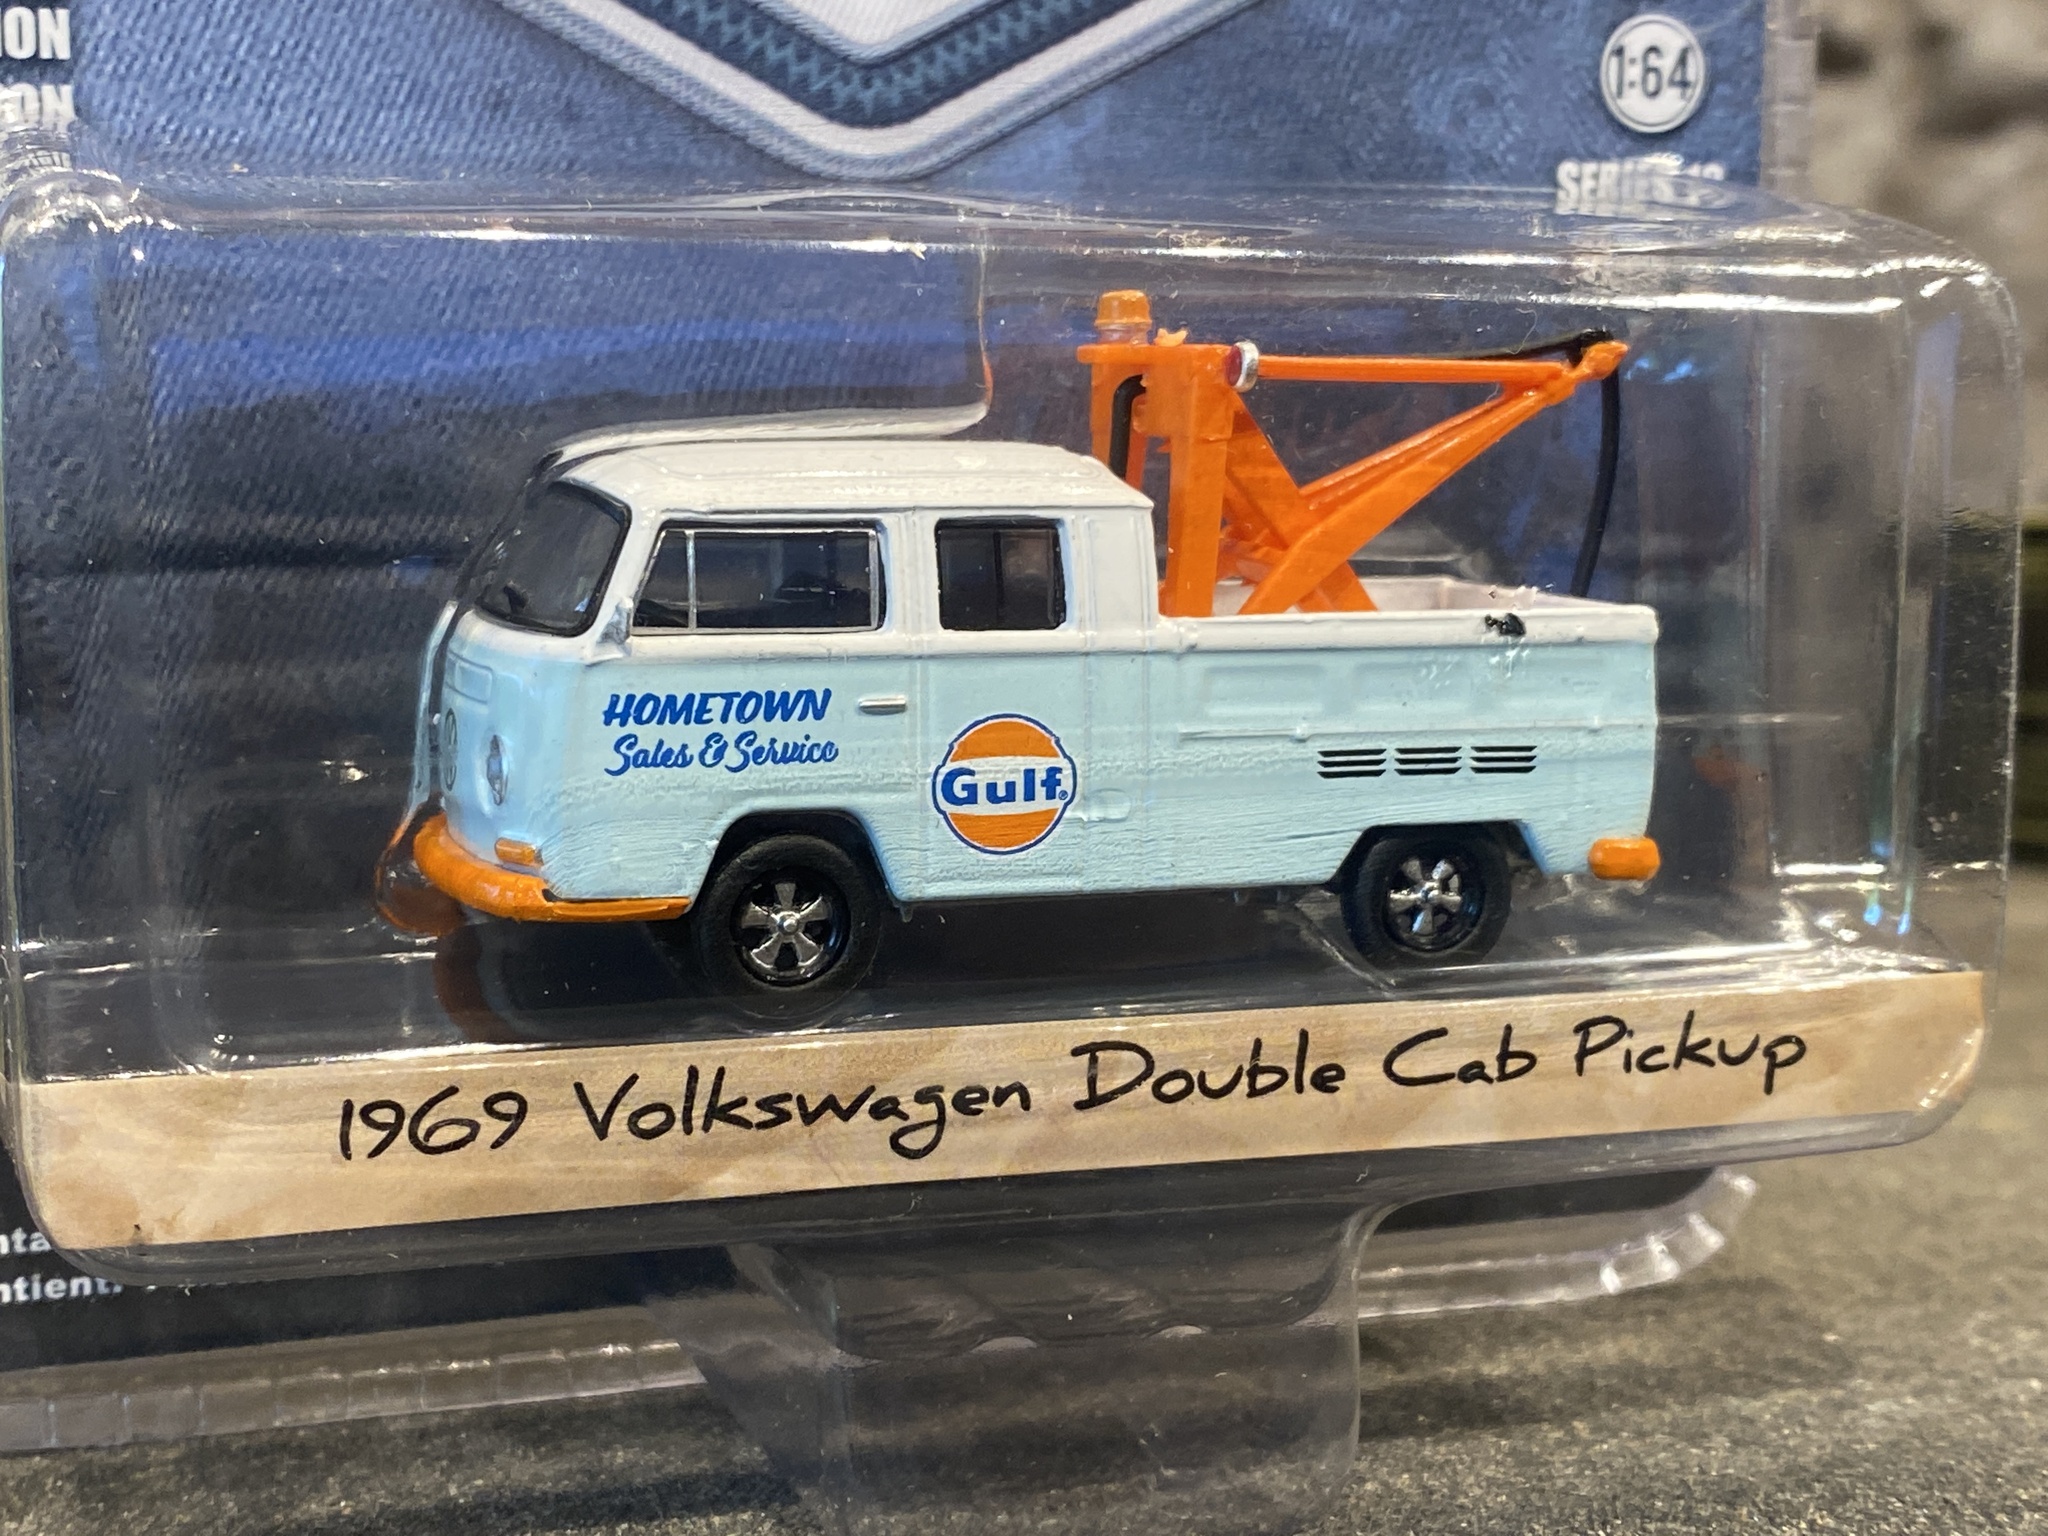 Skala 1/64 Volkswagen Double Cab Pickup 69'  Blue collar fr Greenlight